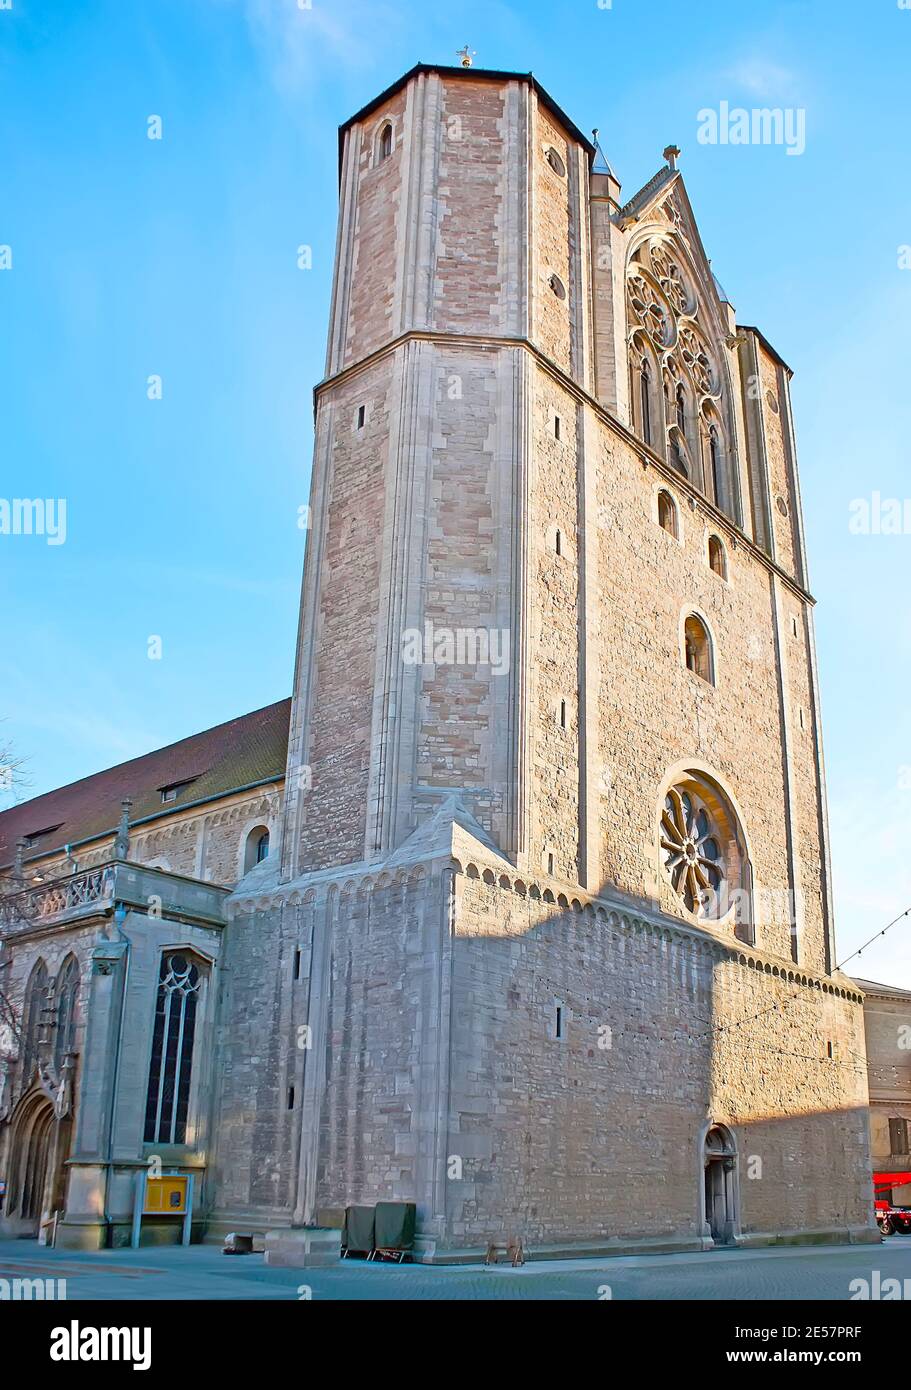 La monumentale facciata gotica della Cattedrale di Brunswick (Dom St Blasii et Johannis) con enormi mura e campanili, Domplatz, Braunschweig, Germania Foto Stock